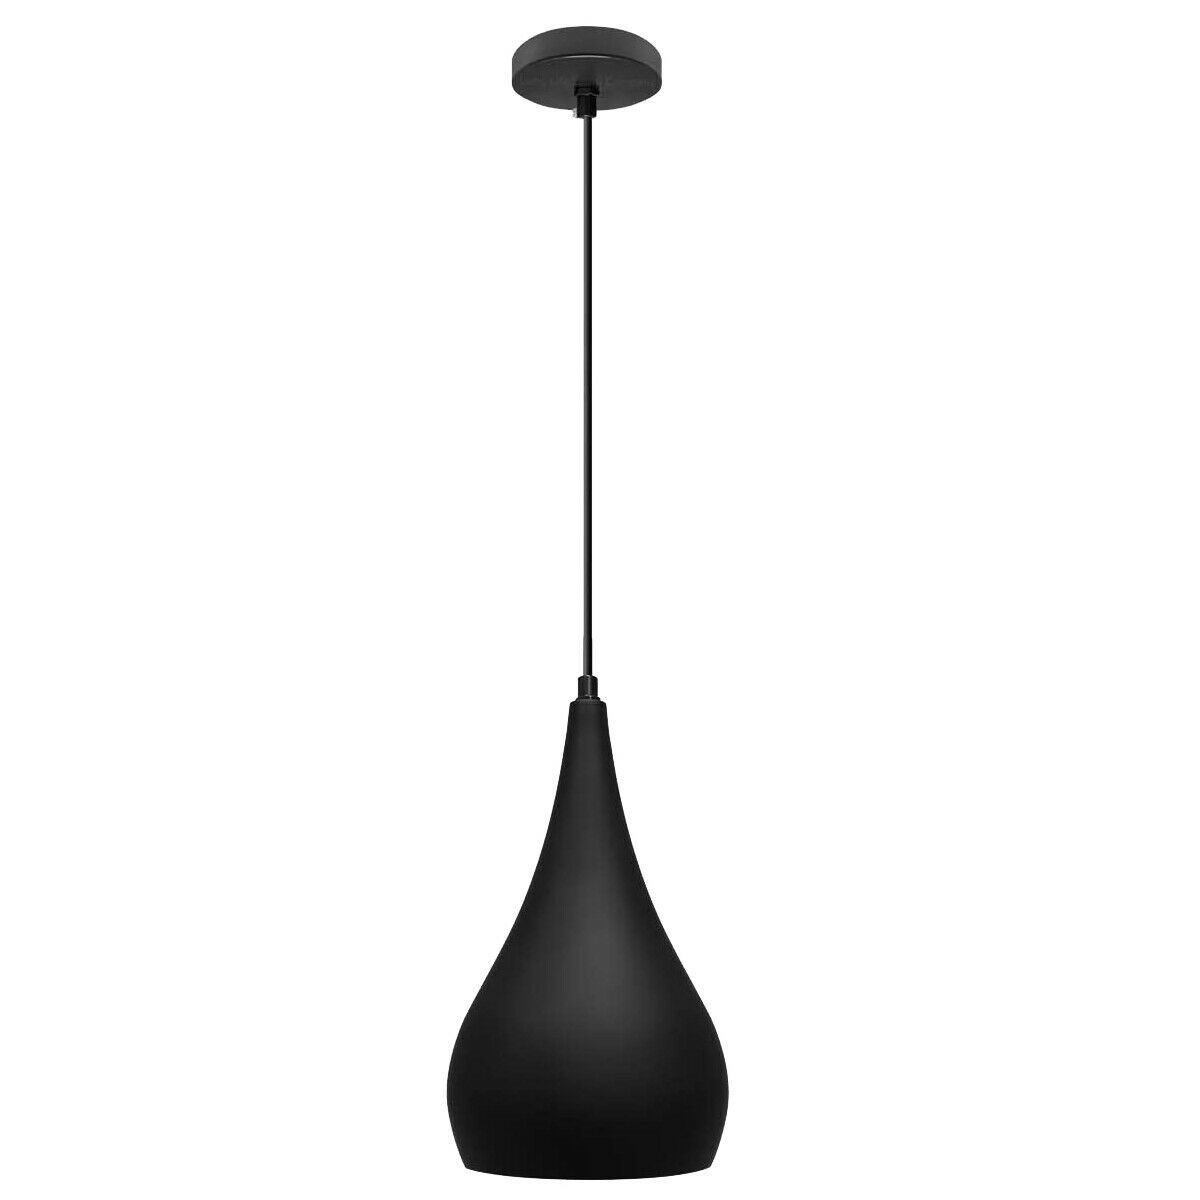 LEDSone industrial vintage Black Orange Adjustable Ceiling Pendant Lights~1592 - LEDSone UK Ltd